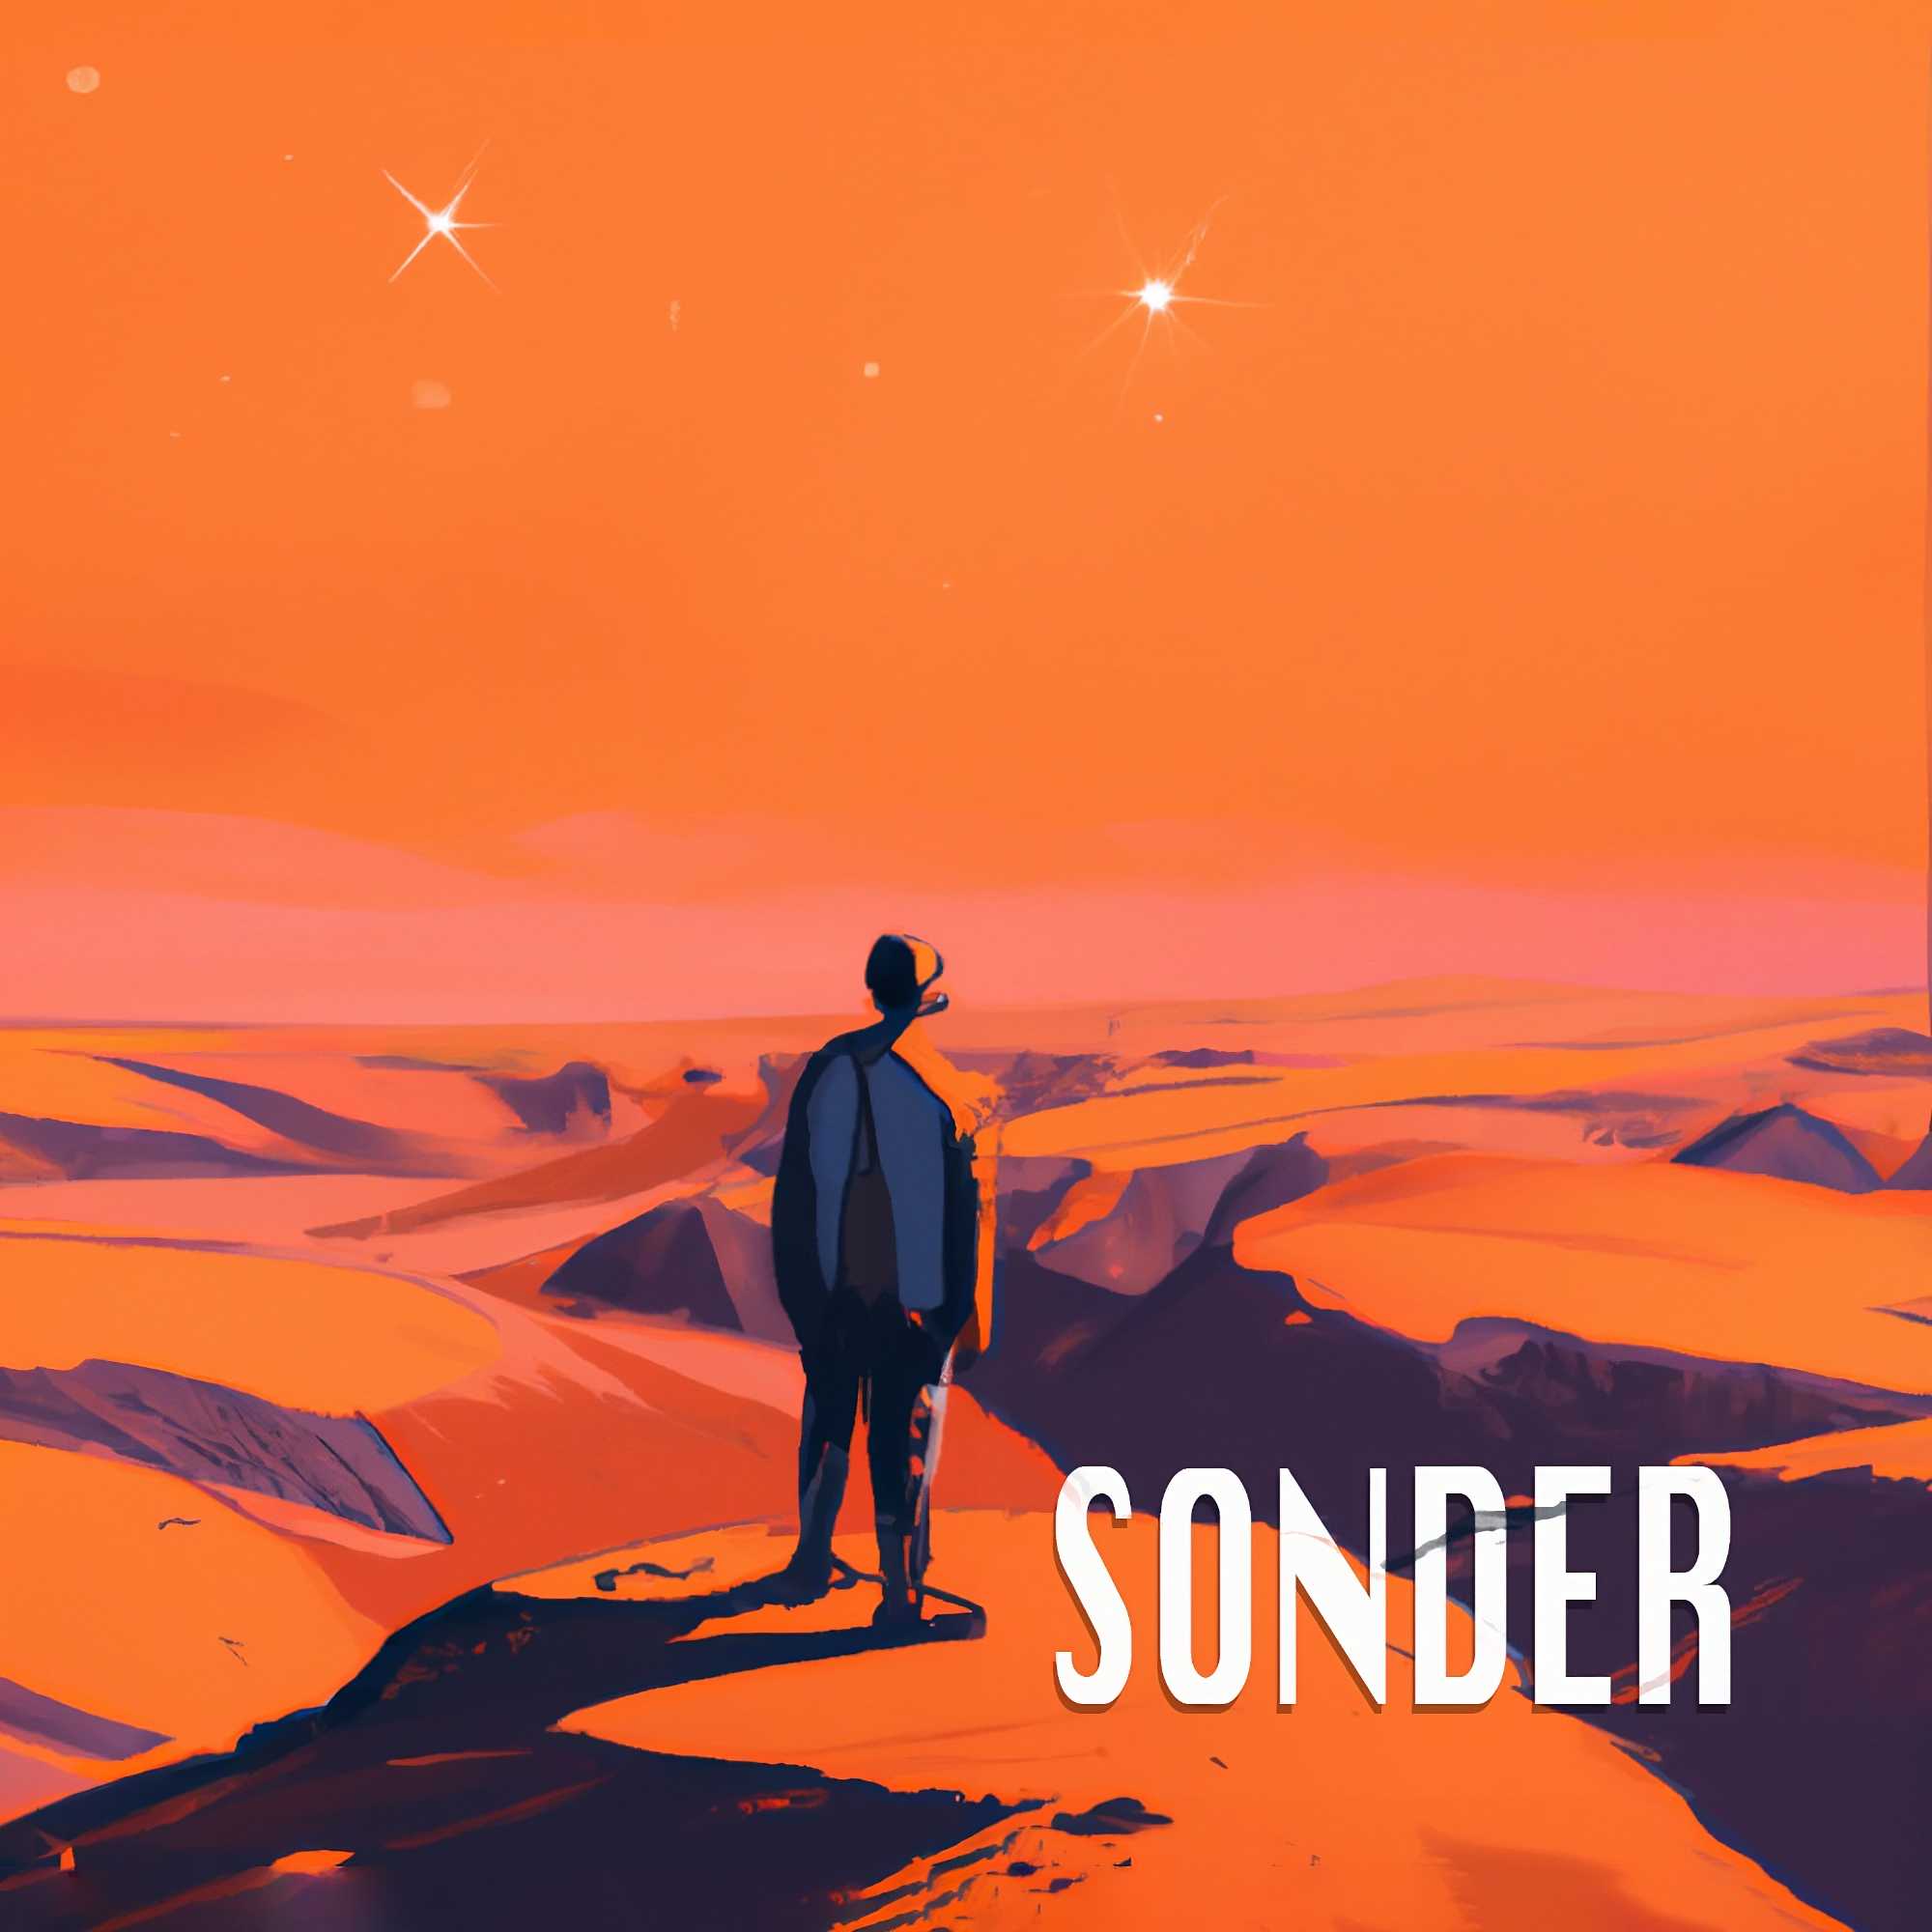 art for song Sonder by Pinnacle of Joy